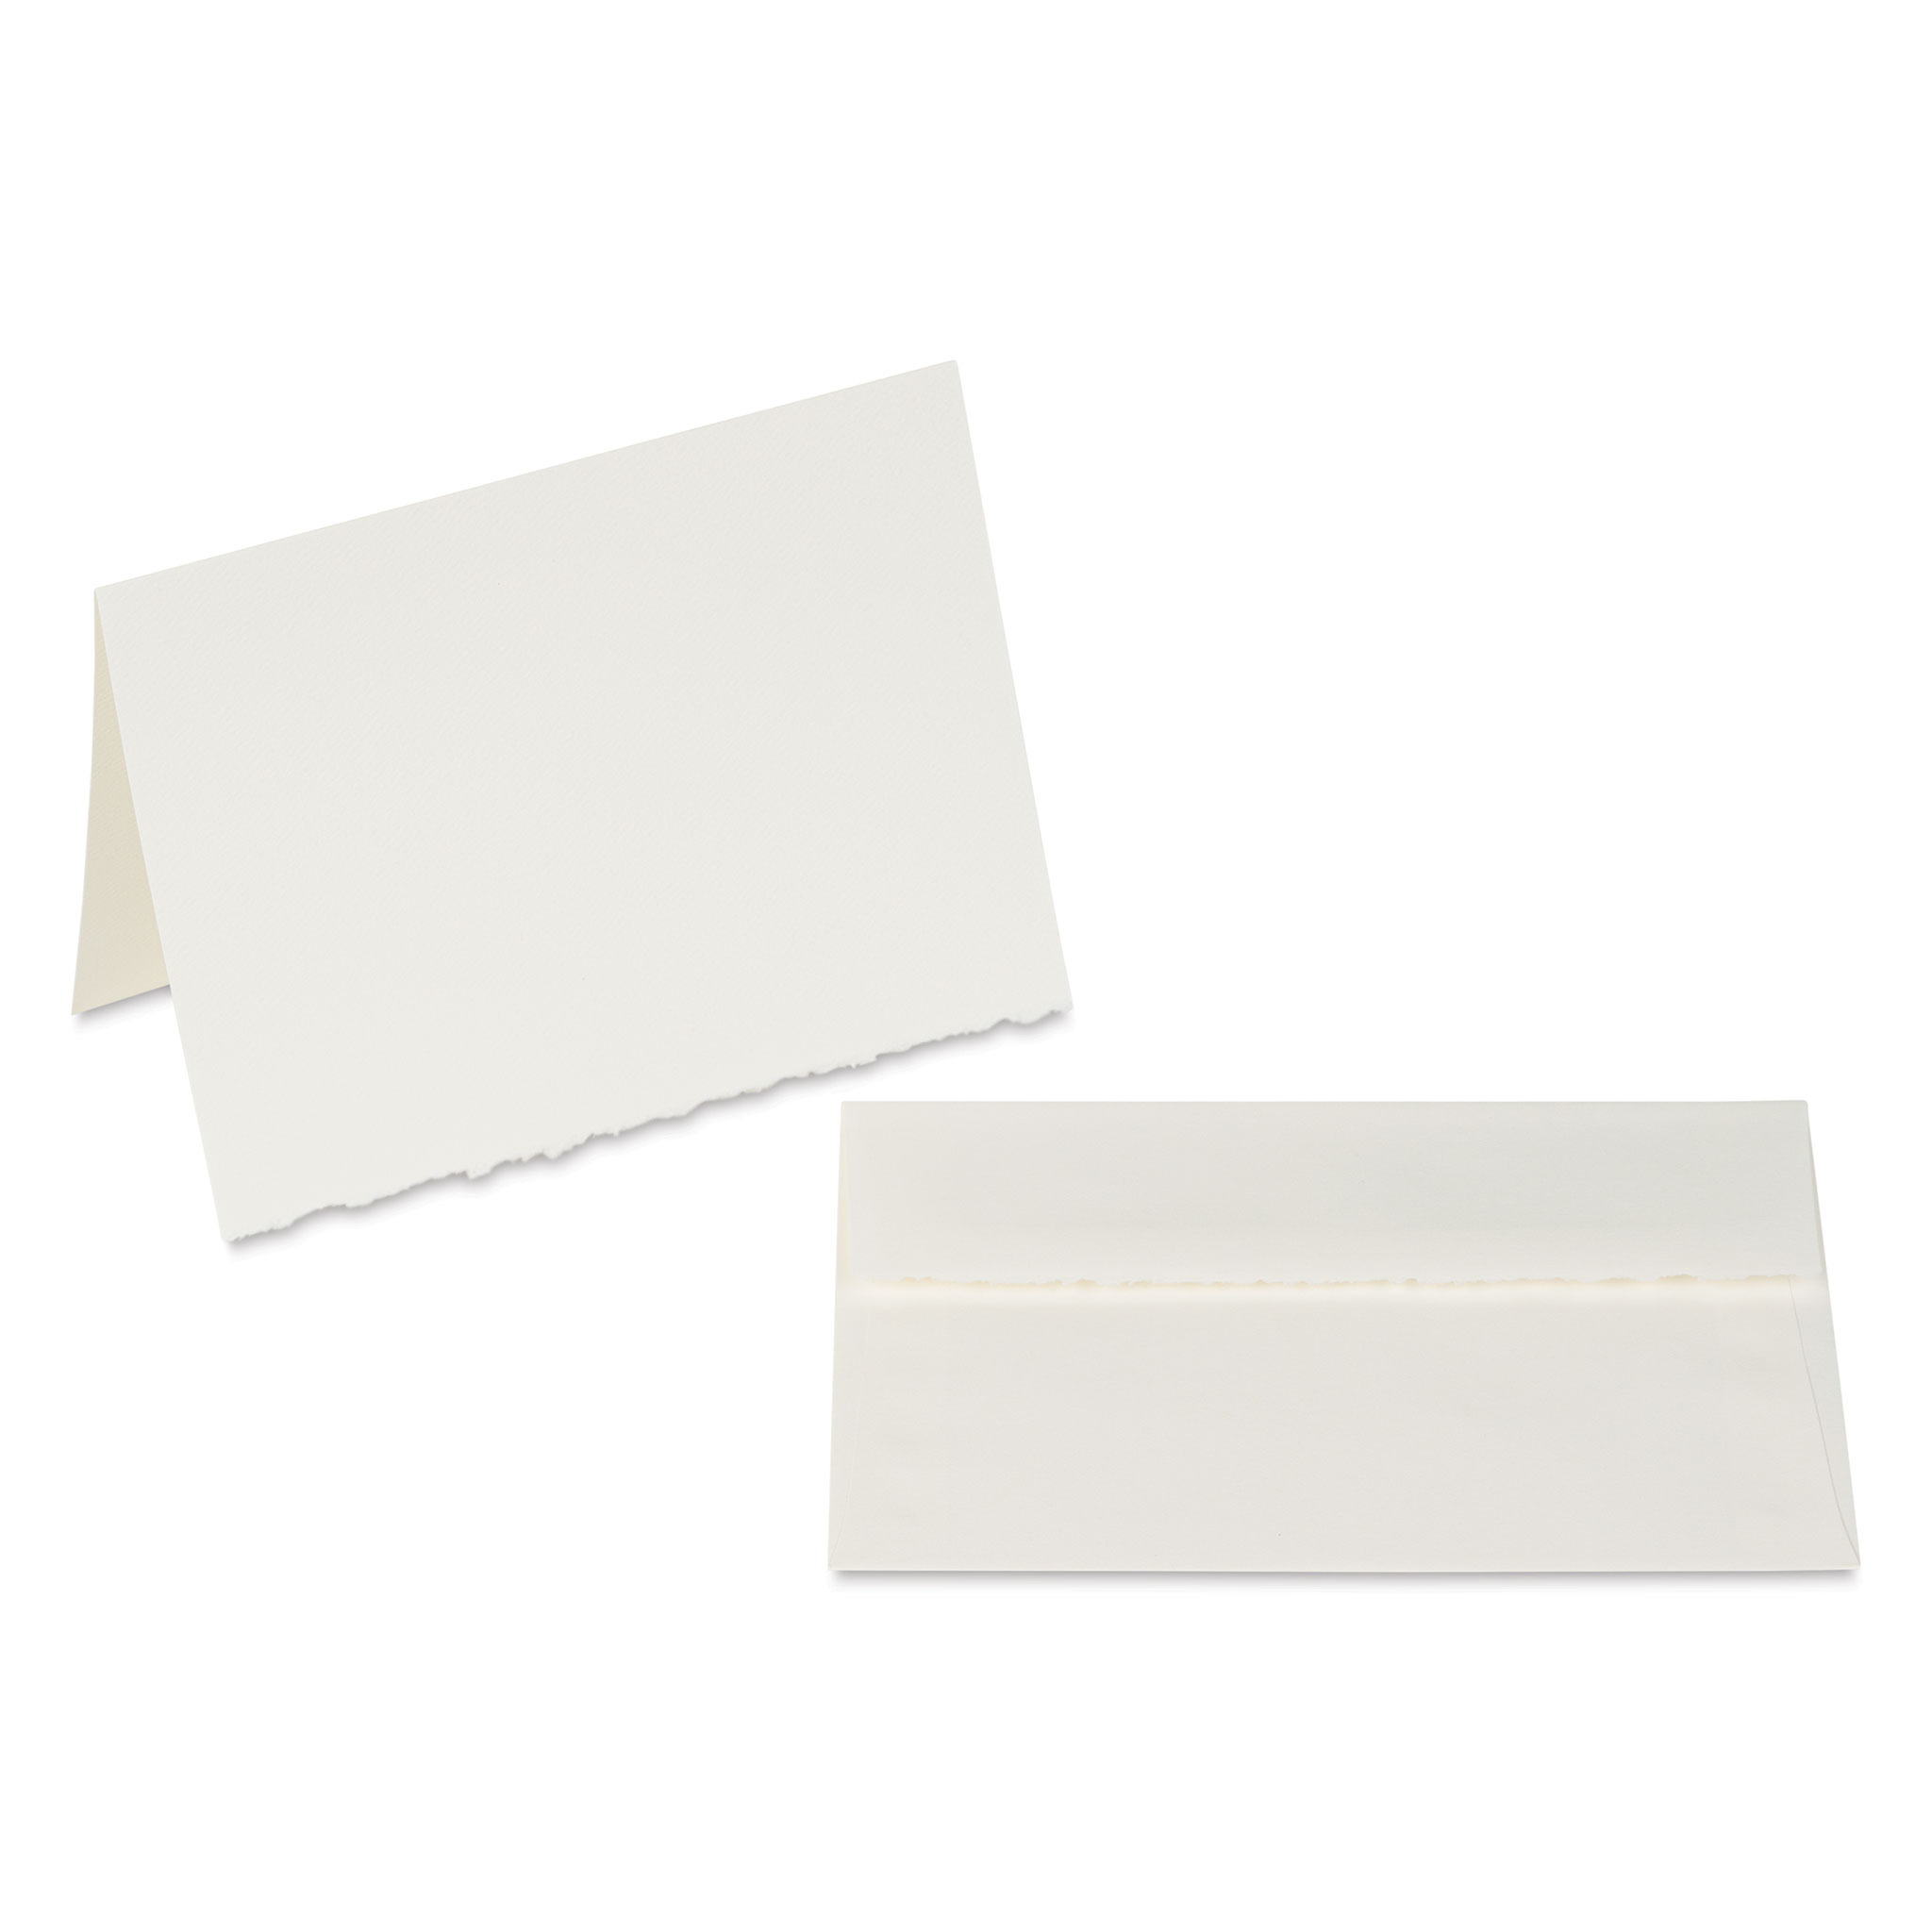 Unleash Style Strathmore Cards & Envelopes 5X6.875 10/Pkg - Watercolor 956